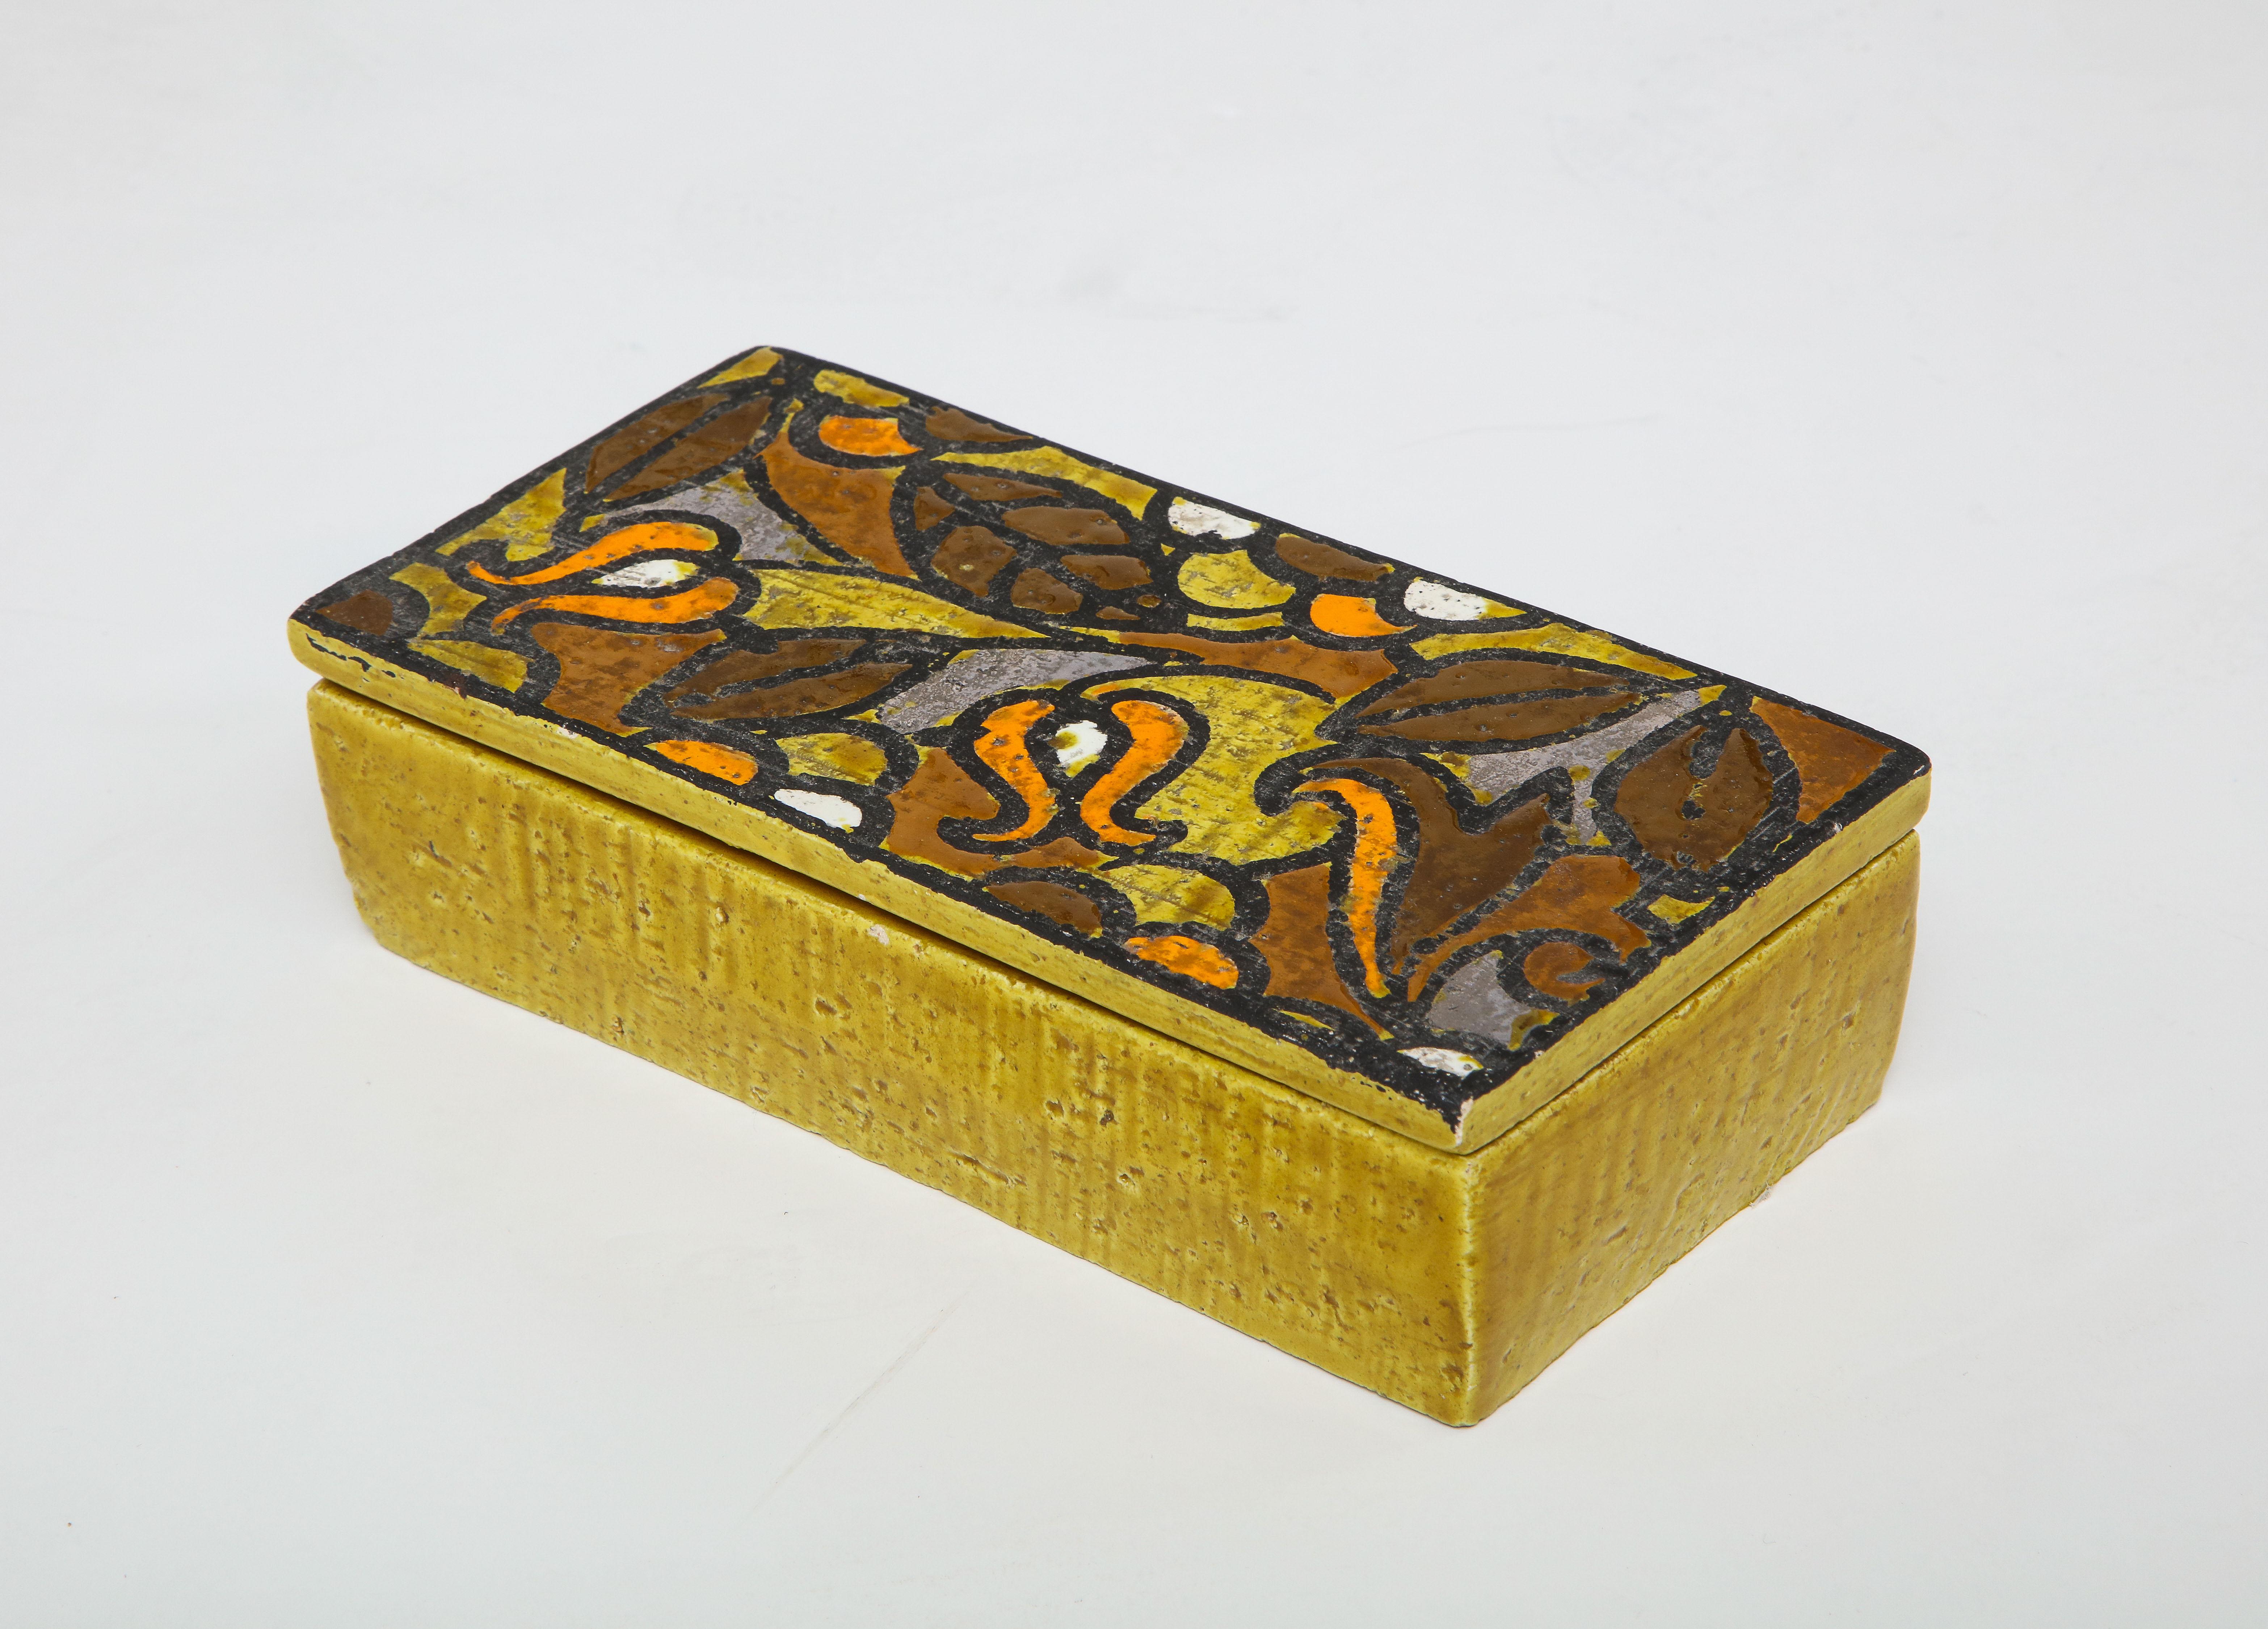 Senfgelbe Keramikdose mit kontrastierendem Deckel mit stilisiertem Blumenmuster in Umbra, Orange, Gelb und Weiß. Unterschrieben.